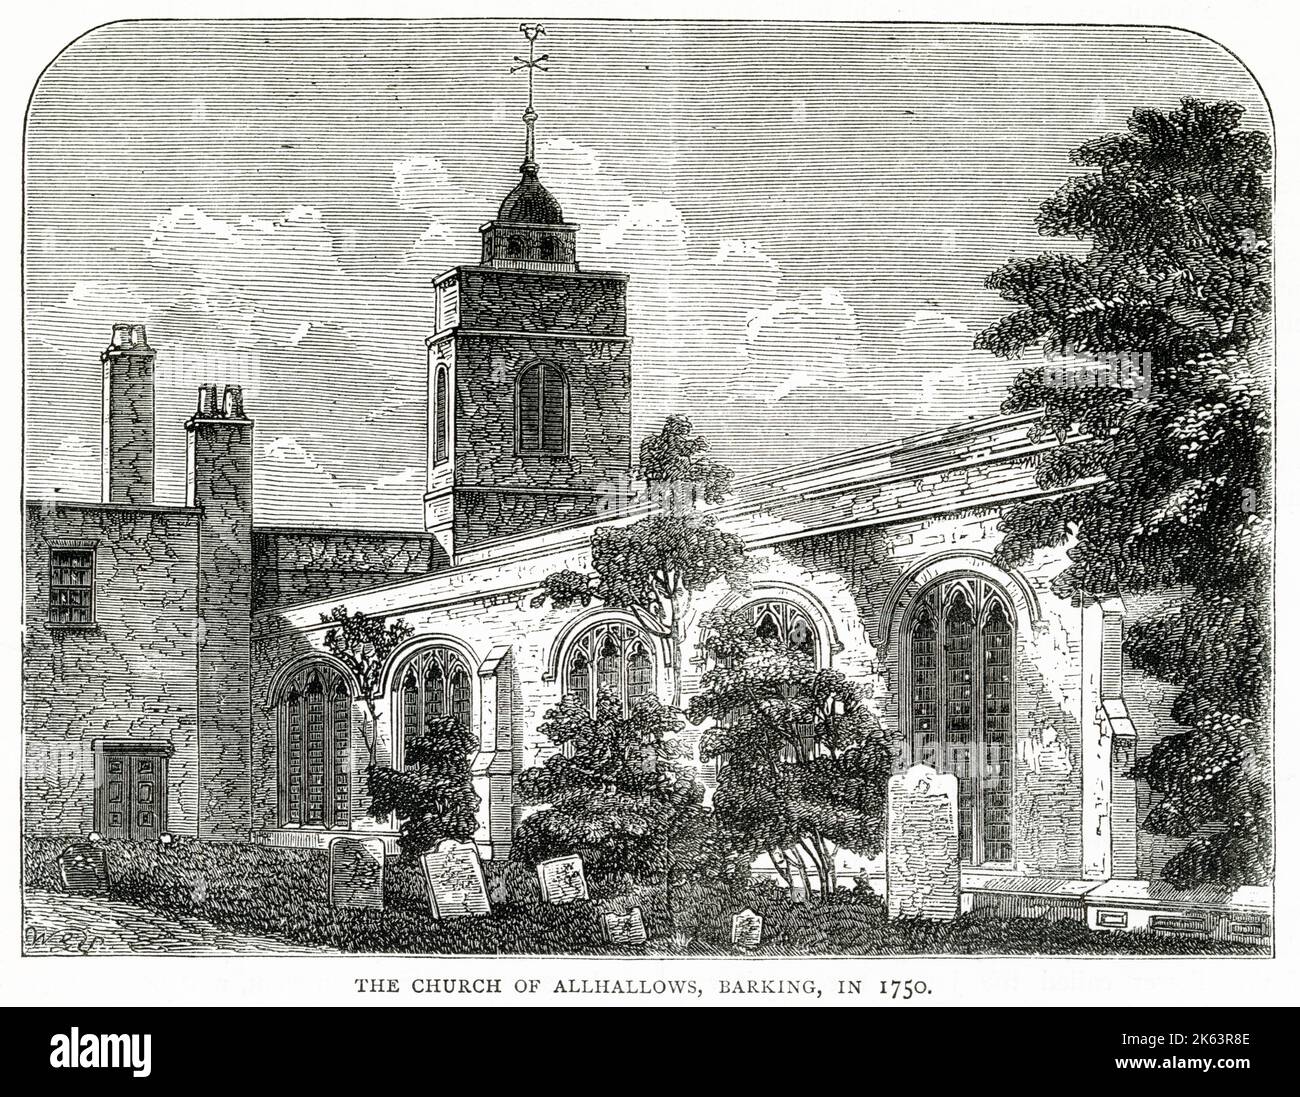 All Hallows by the Tower, parfois connue sous le nom de All Hallows Barking, est considérée comme la plus ancienne église de la ville de Londres. Il a survécu au grand incendie de Londres en 1666, mais a été gravement endommagé pendant le Blitz de la Seconde Guerre mondiale Après une vaste reconstruction, il a été redédié en 1957. Banque D'Images